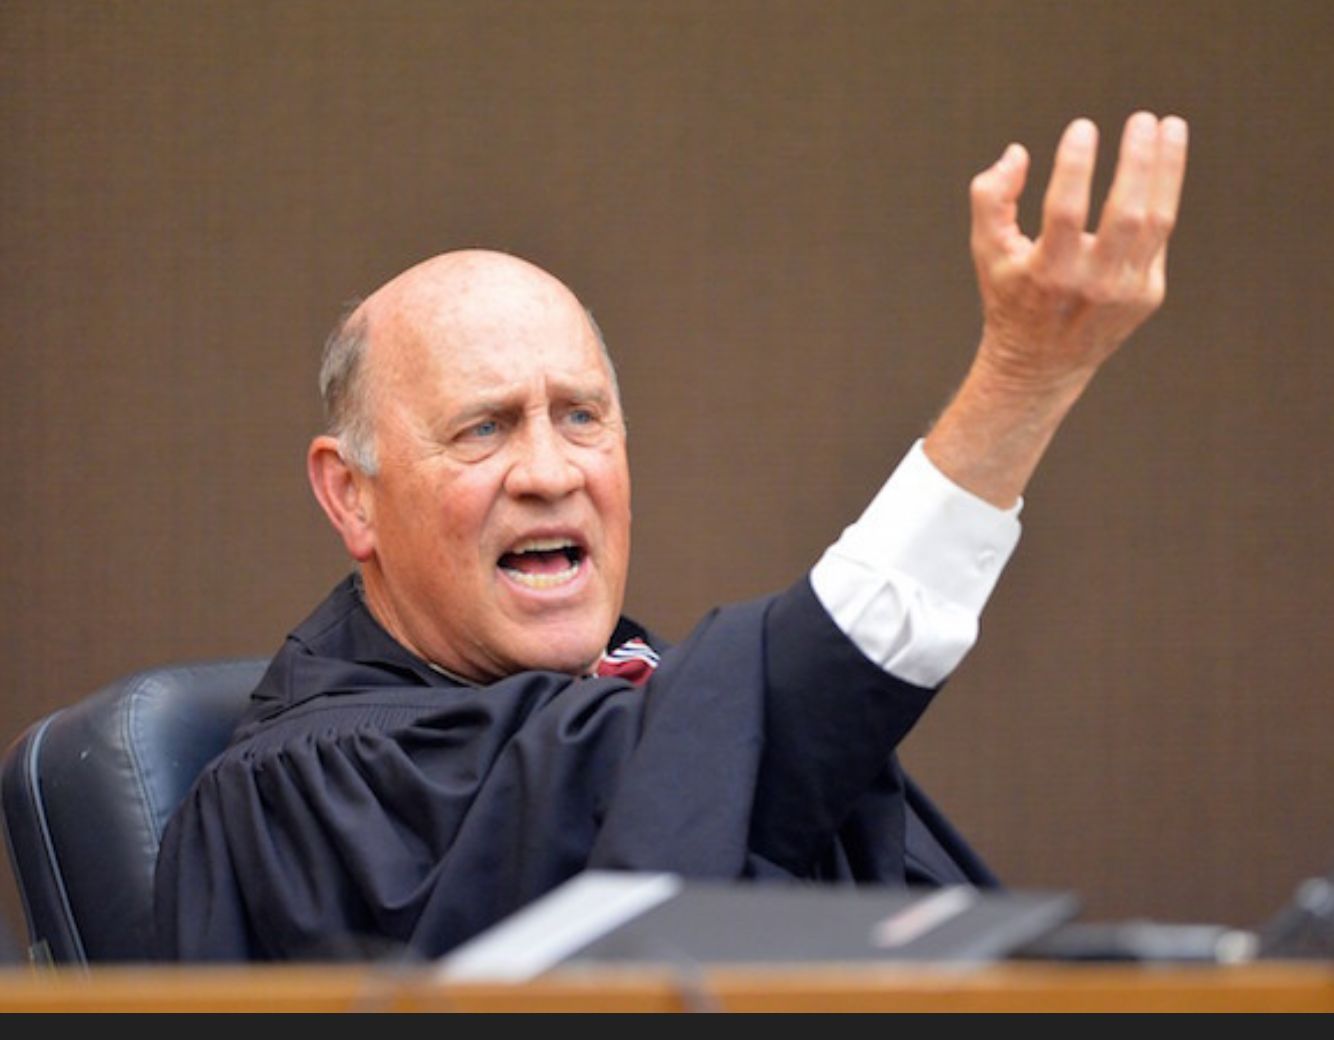 Judge is judging Blank Meme Template